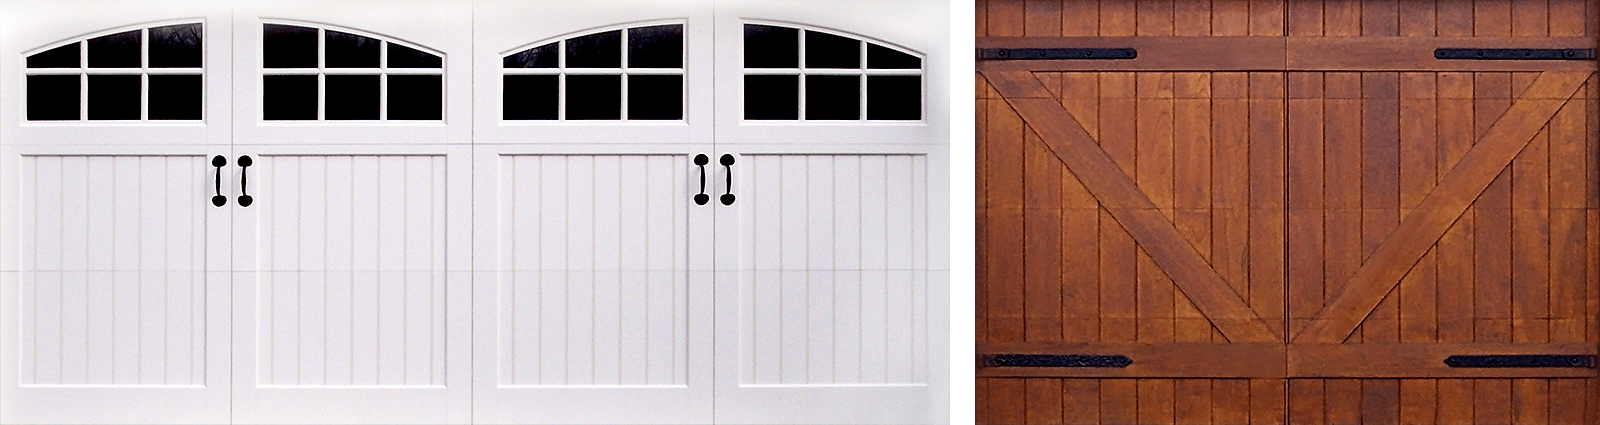 Decorative Garage Door Hardware, Imitation Garage Door Hinges